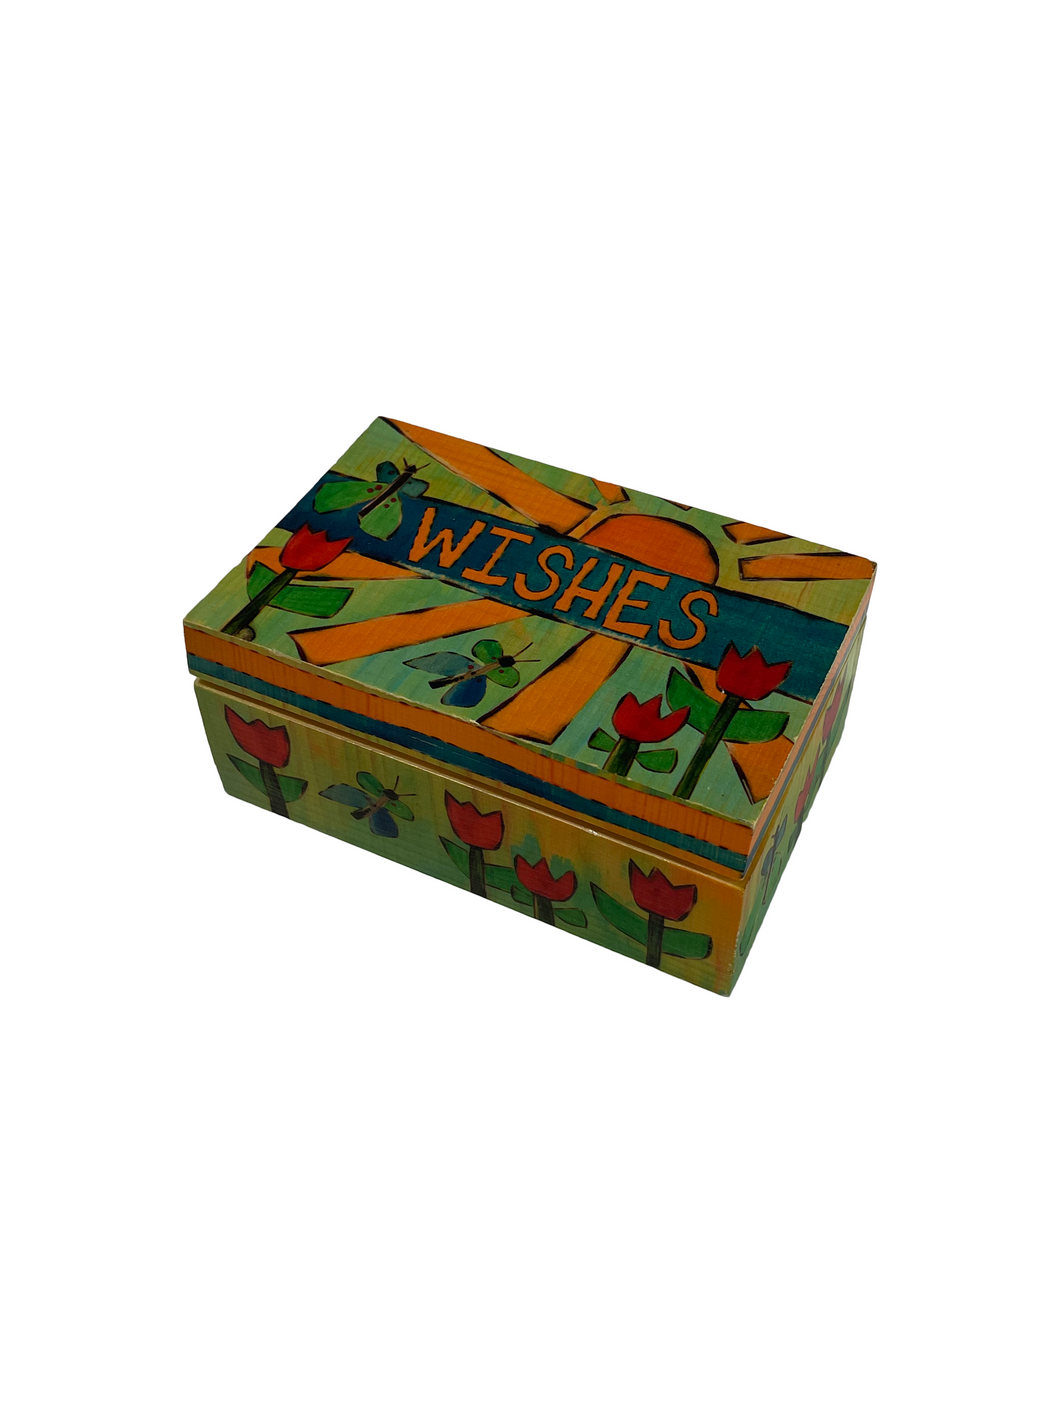 Wishes Keepsake Box